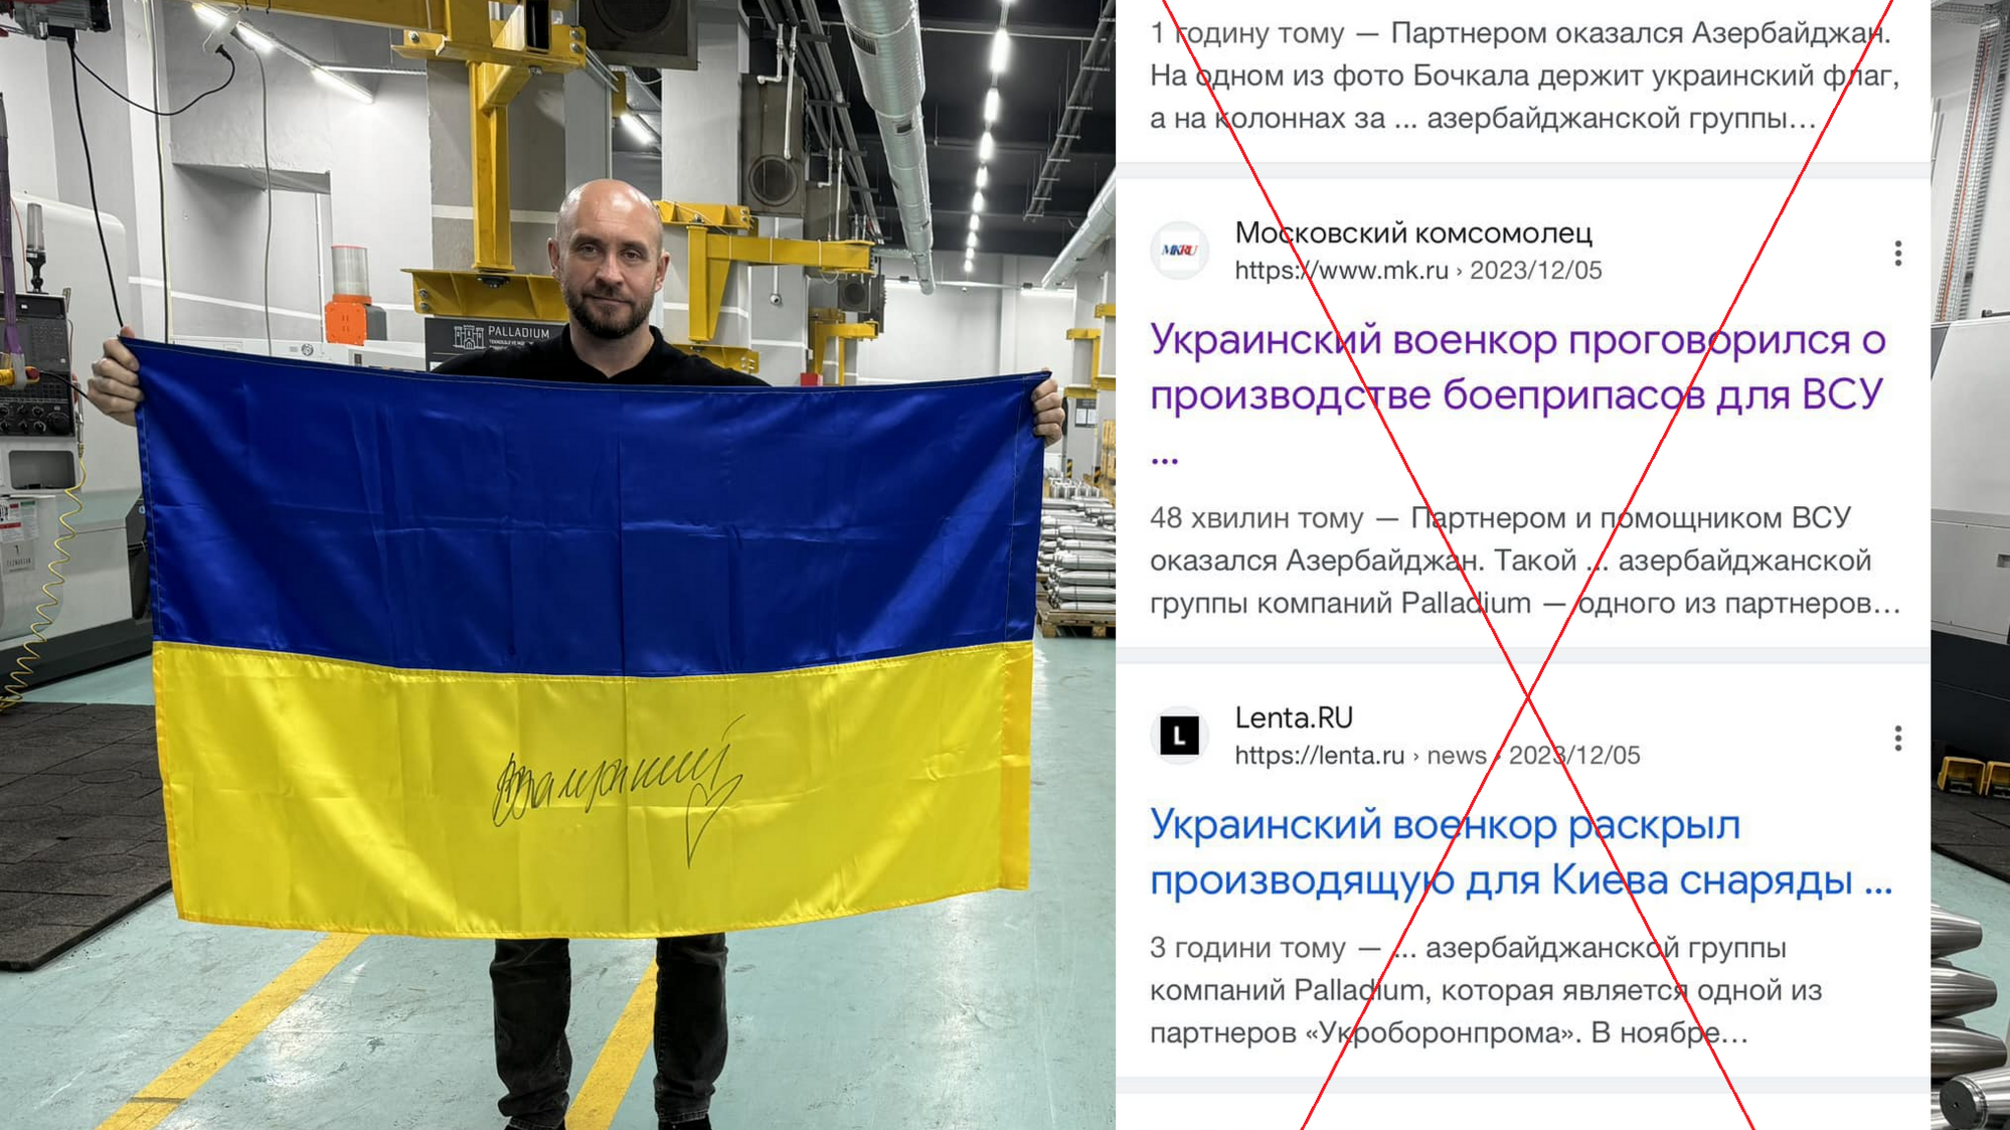 'Класична маніпуляція': Бочкала розвінчав російський фейк про 'секретні' снаряди 122 калібру